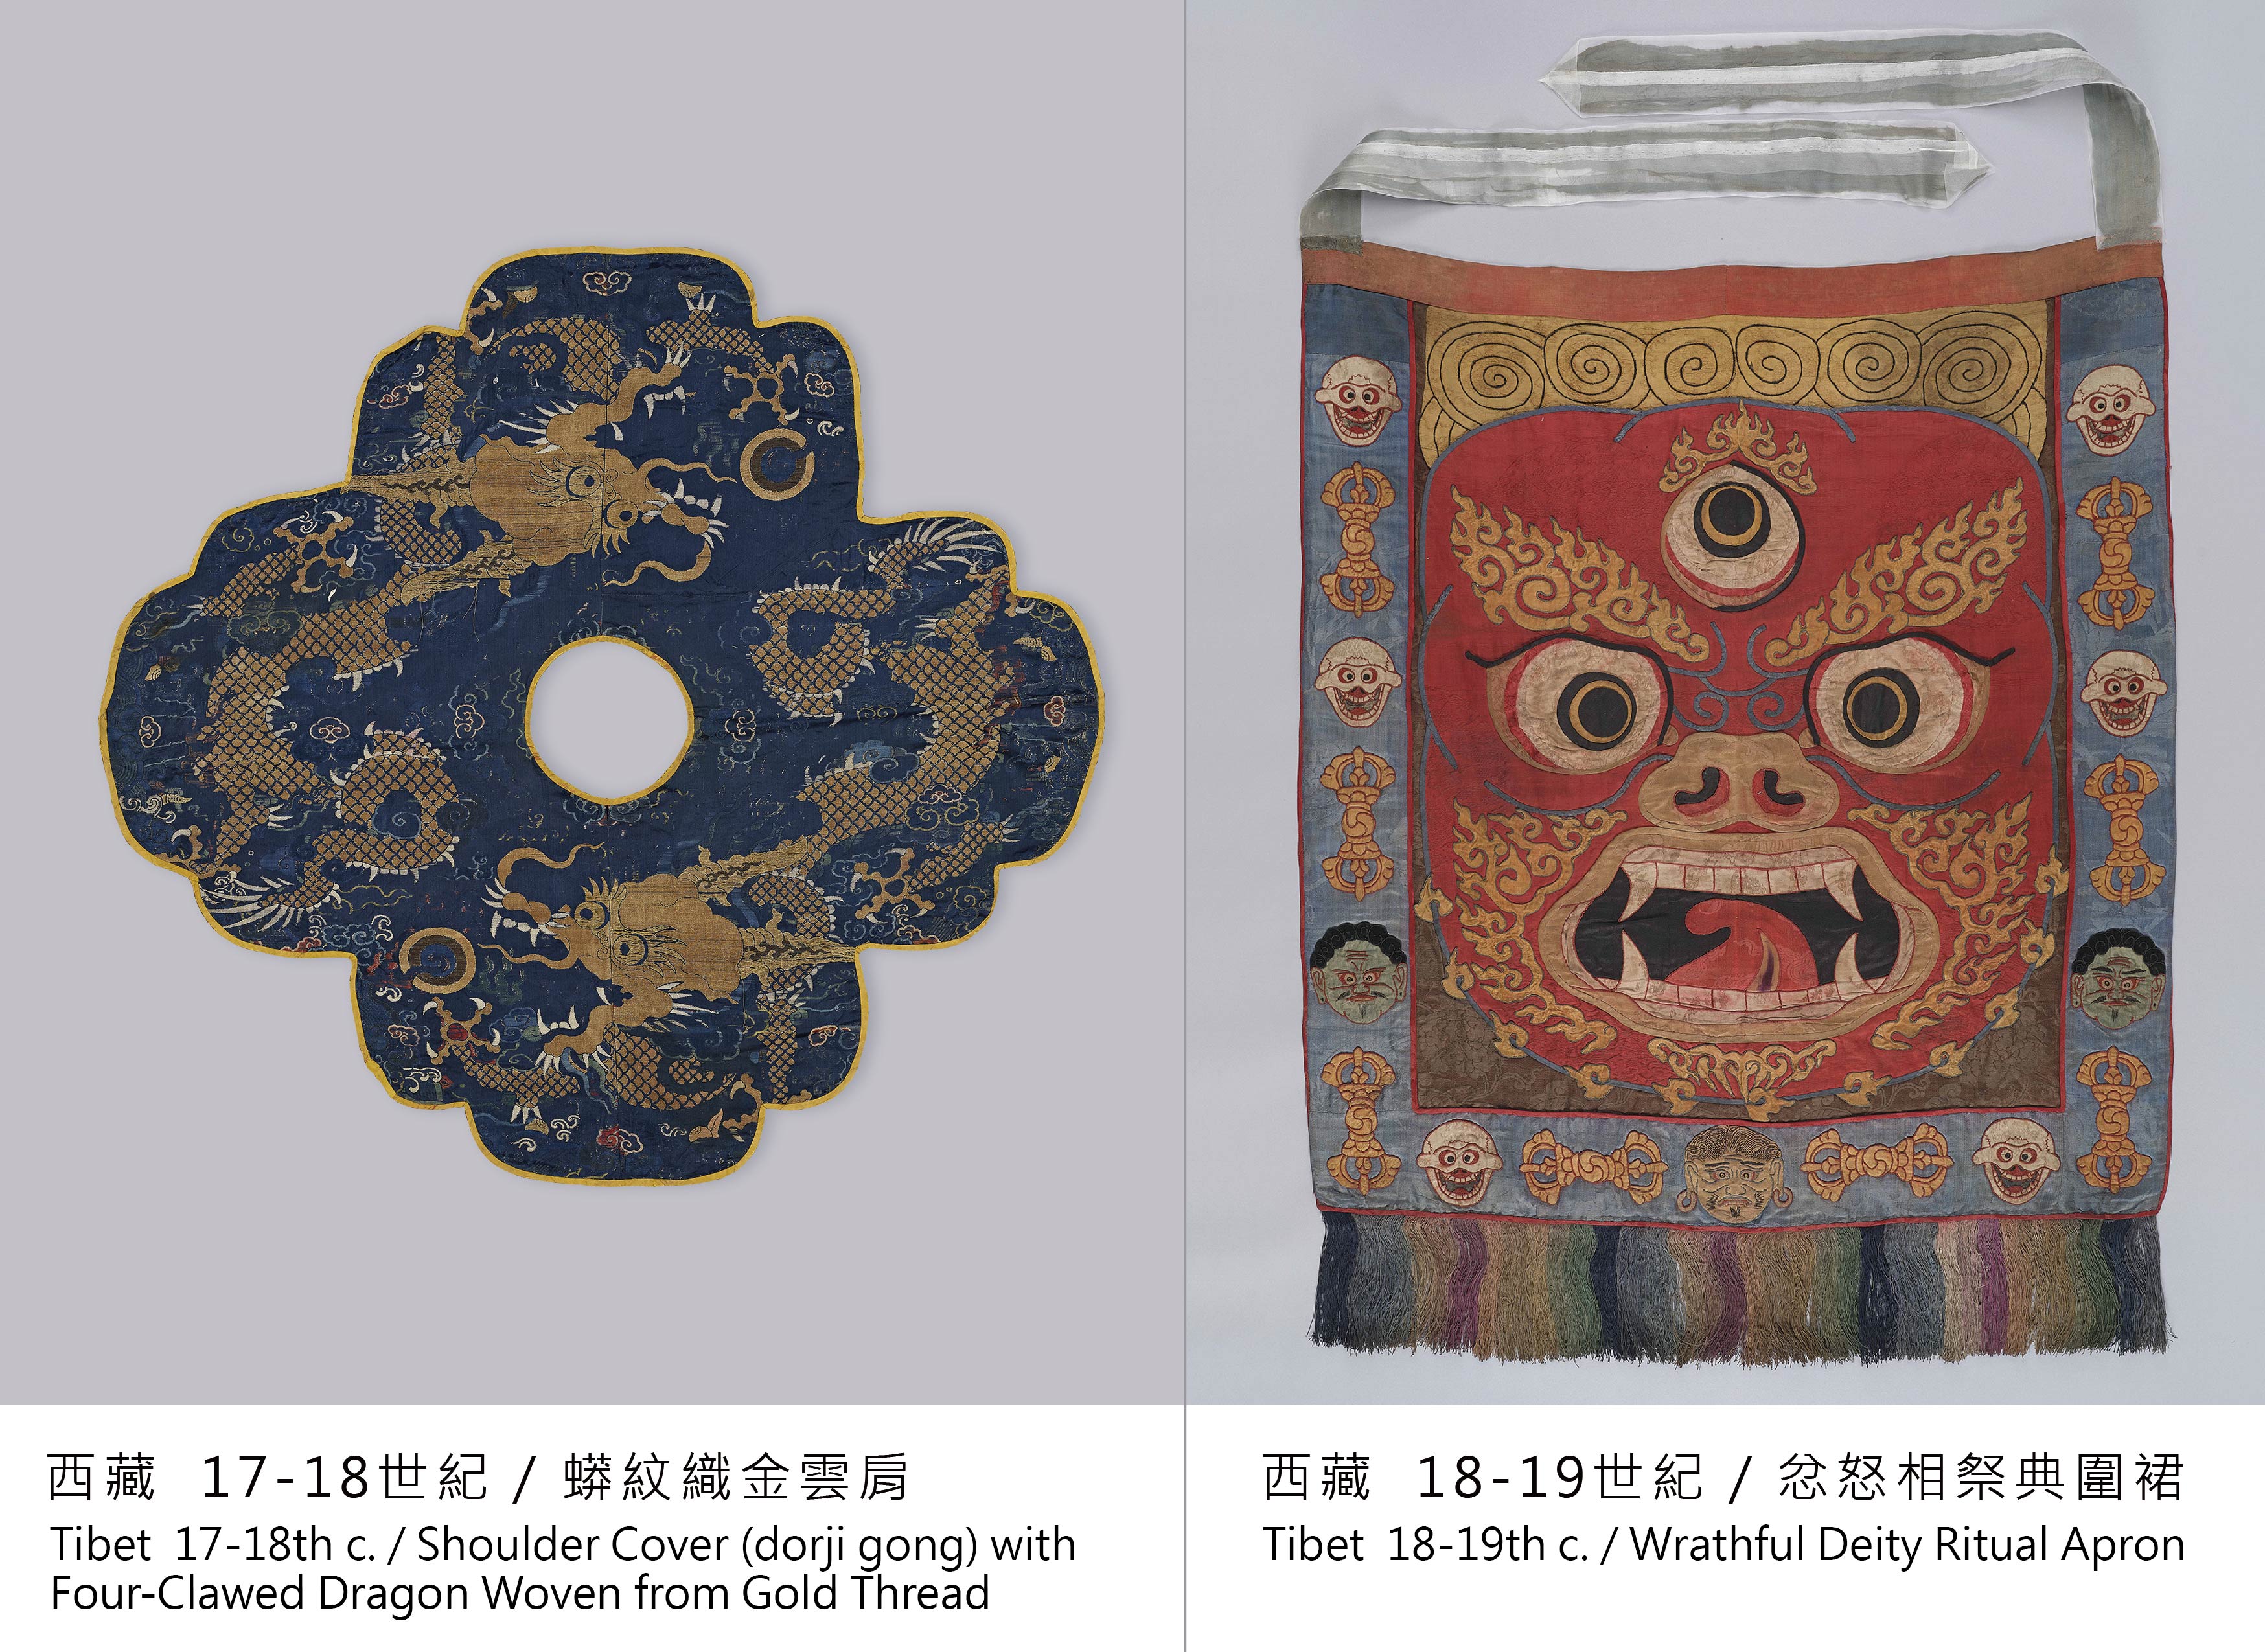 西藏  17-18世紀 / 蟒紋織金雲肩　　　　　西藏  18-19世紀 / 忿怒相祭典圍裙